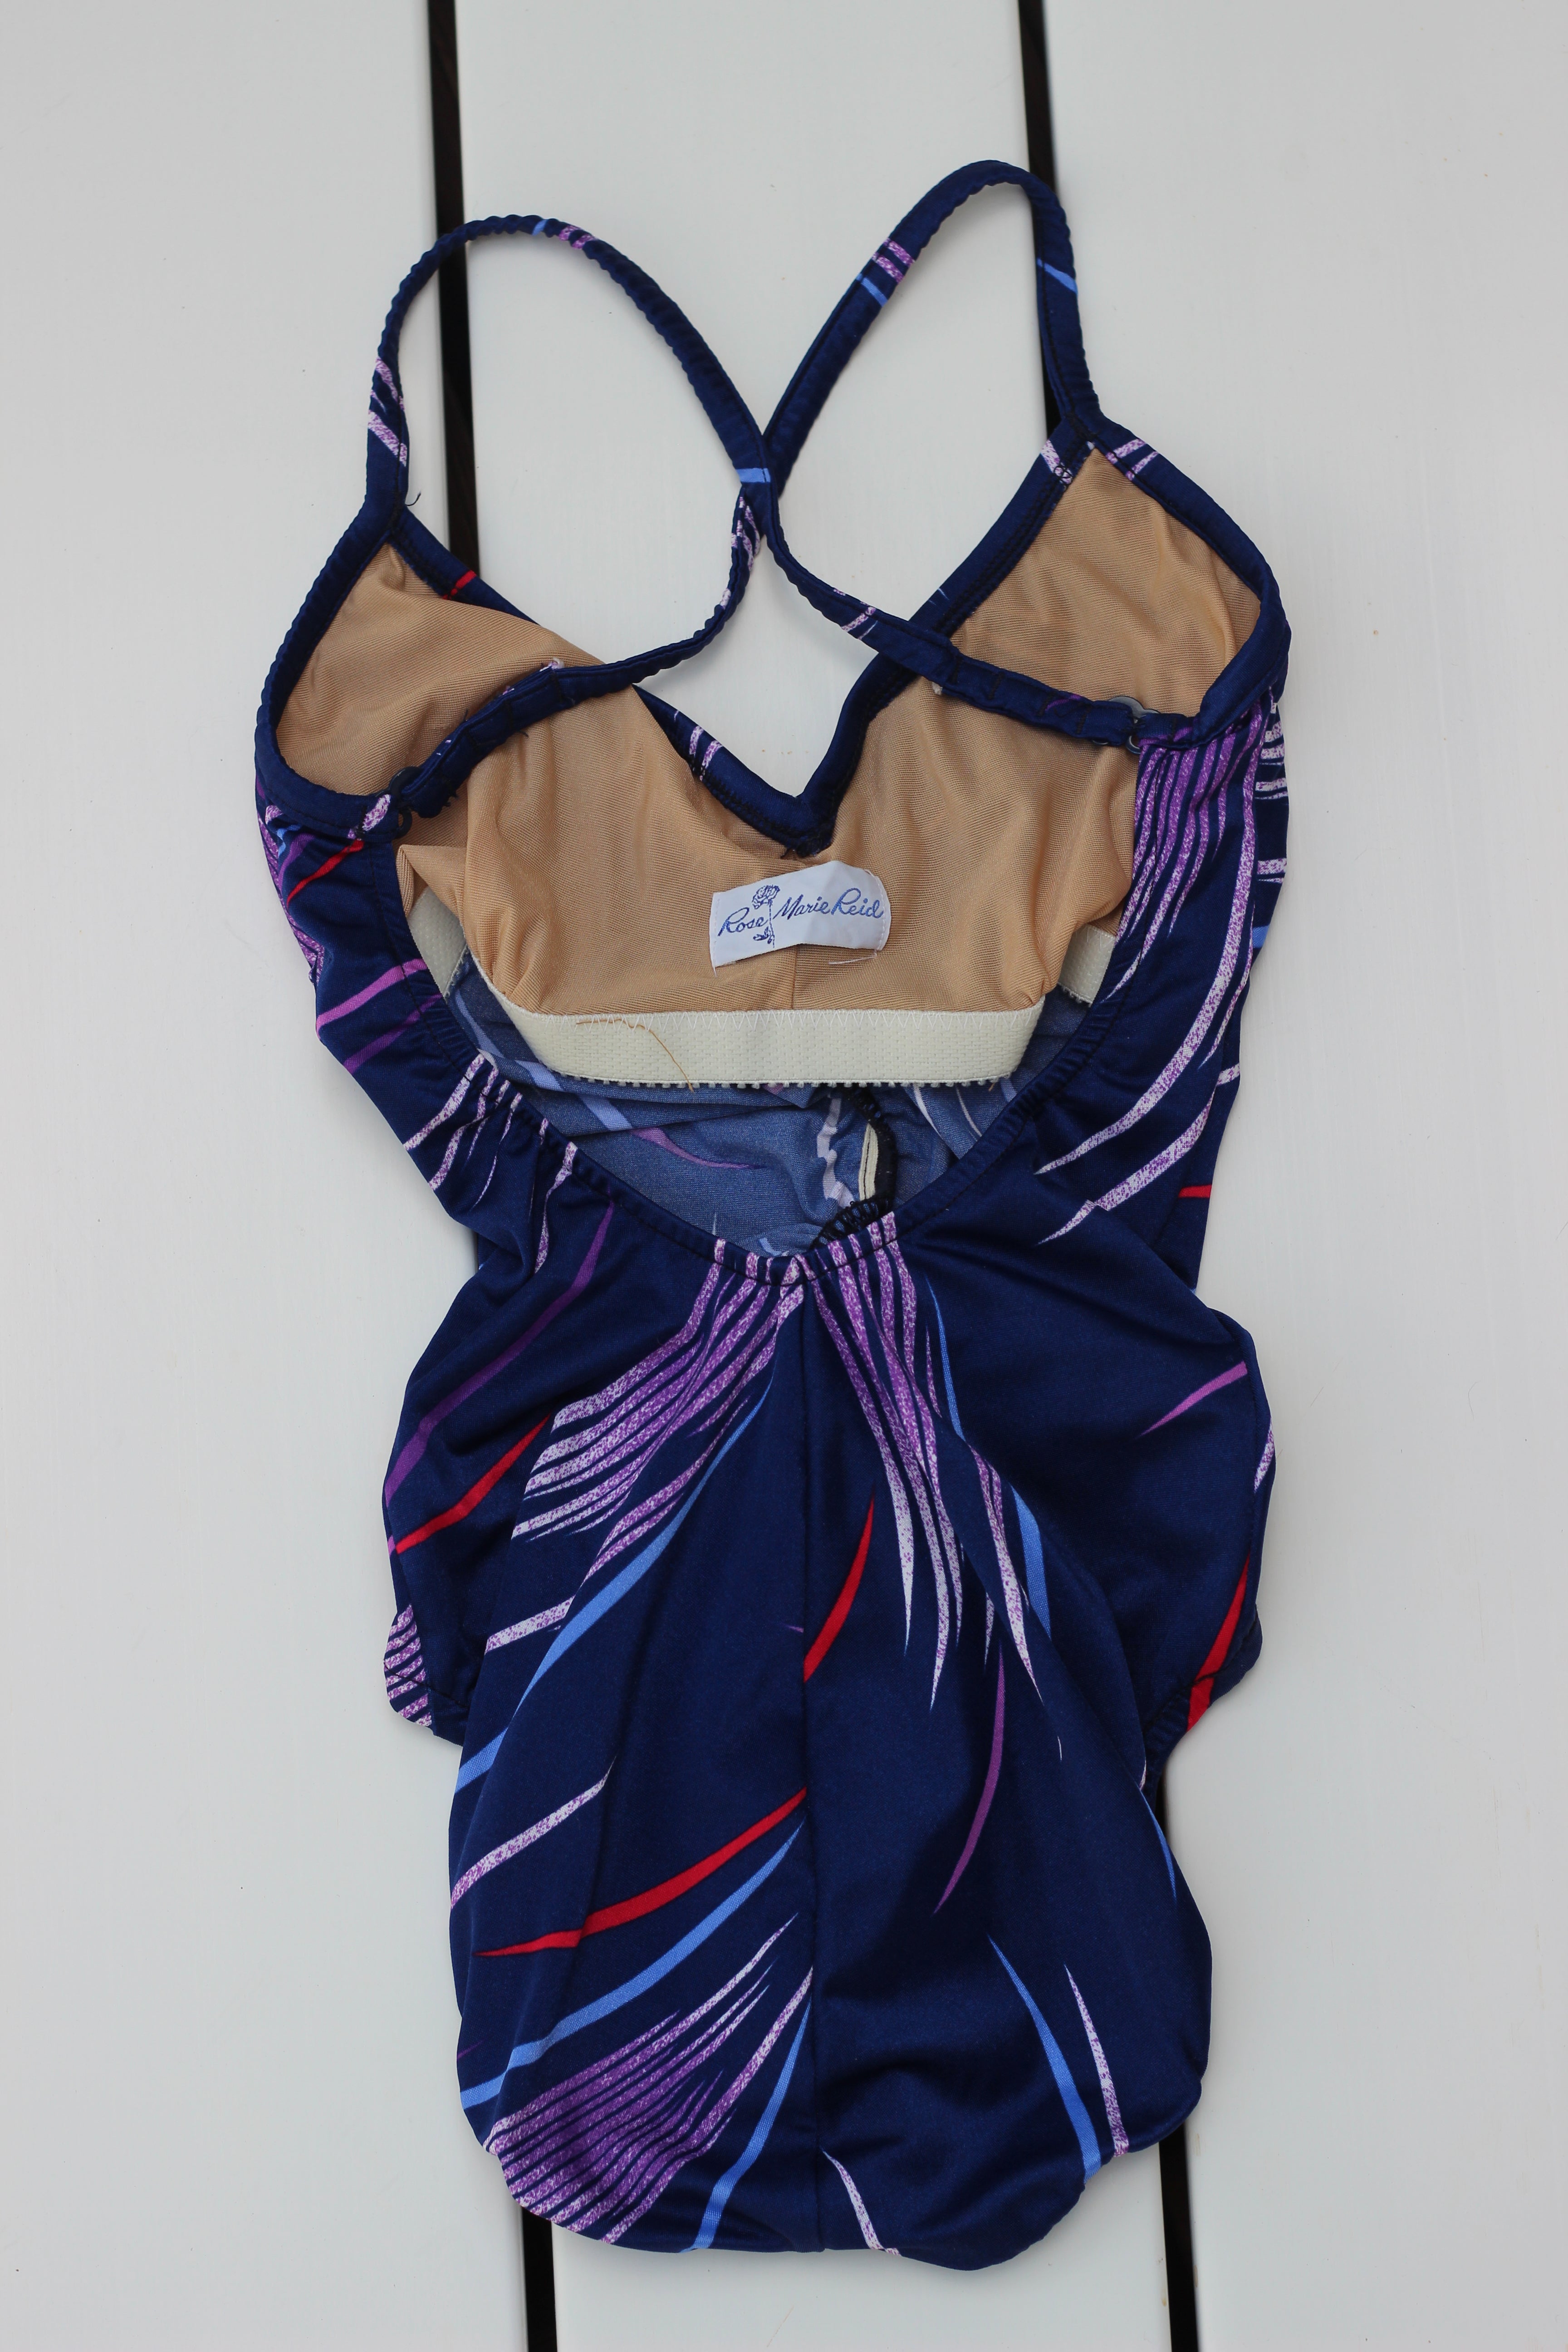 Rad 80's Vintage Swim Suit/ Body Suit (XS)